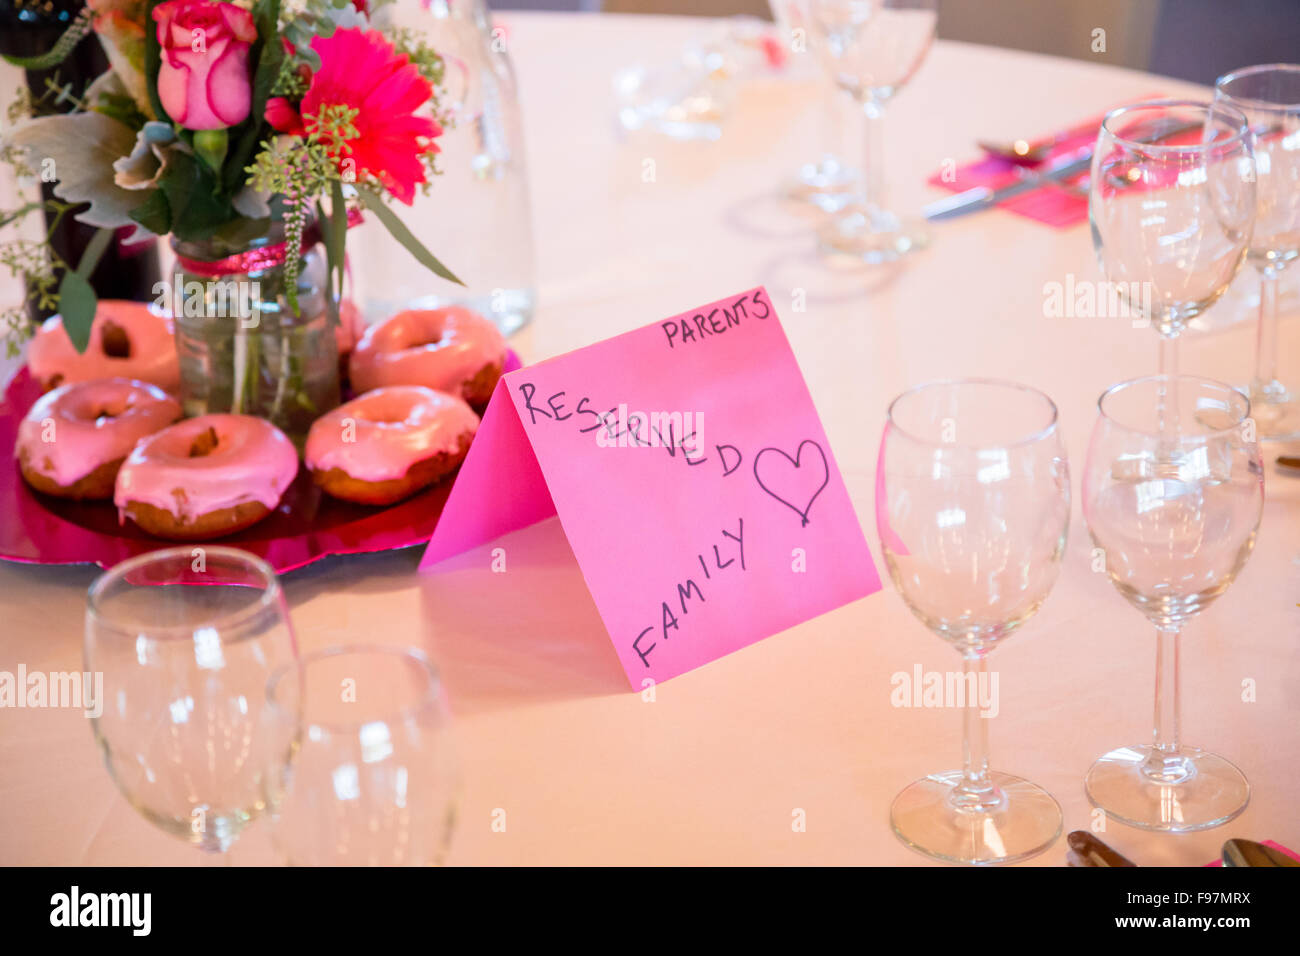 Melden Sie sich zeigen, dass diese Tabelle für Familie und Eltern bei einer Hochzeitsfeier reserviert ist. Stockfoto